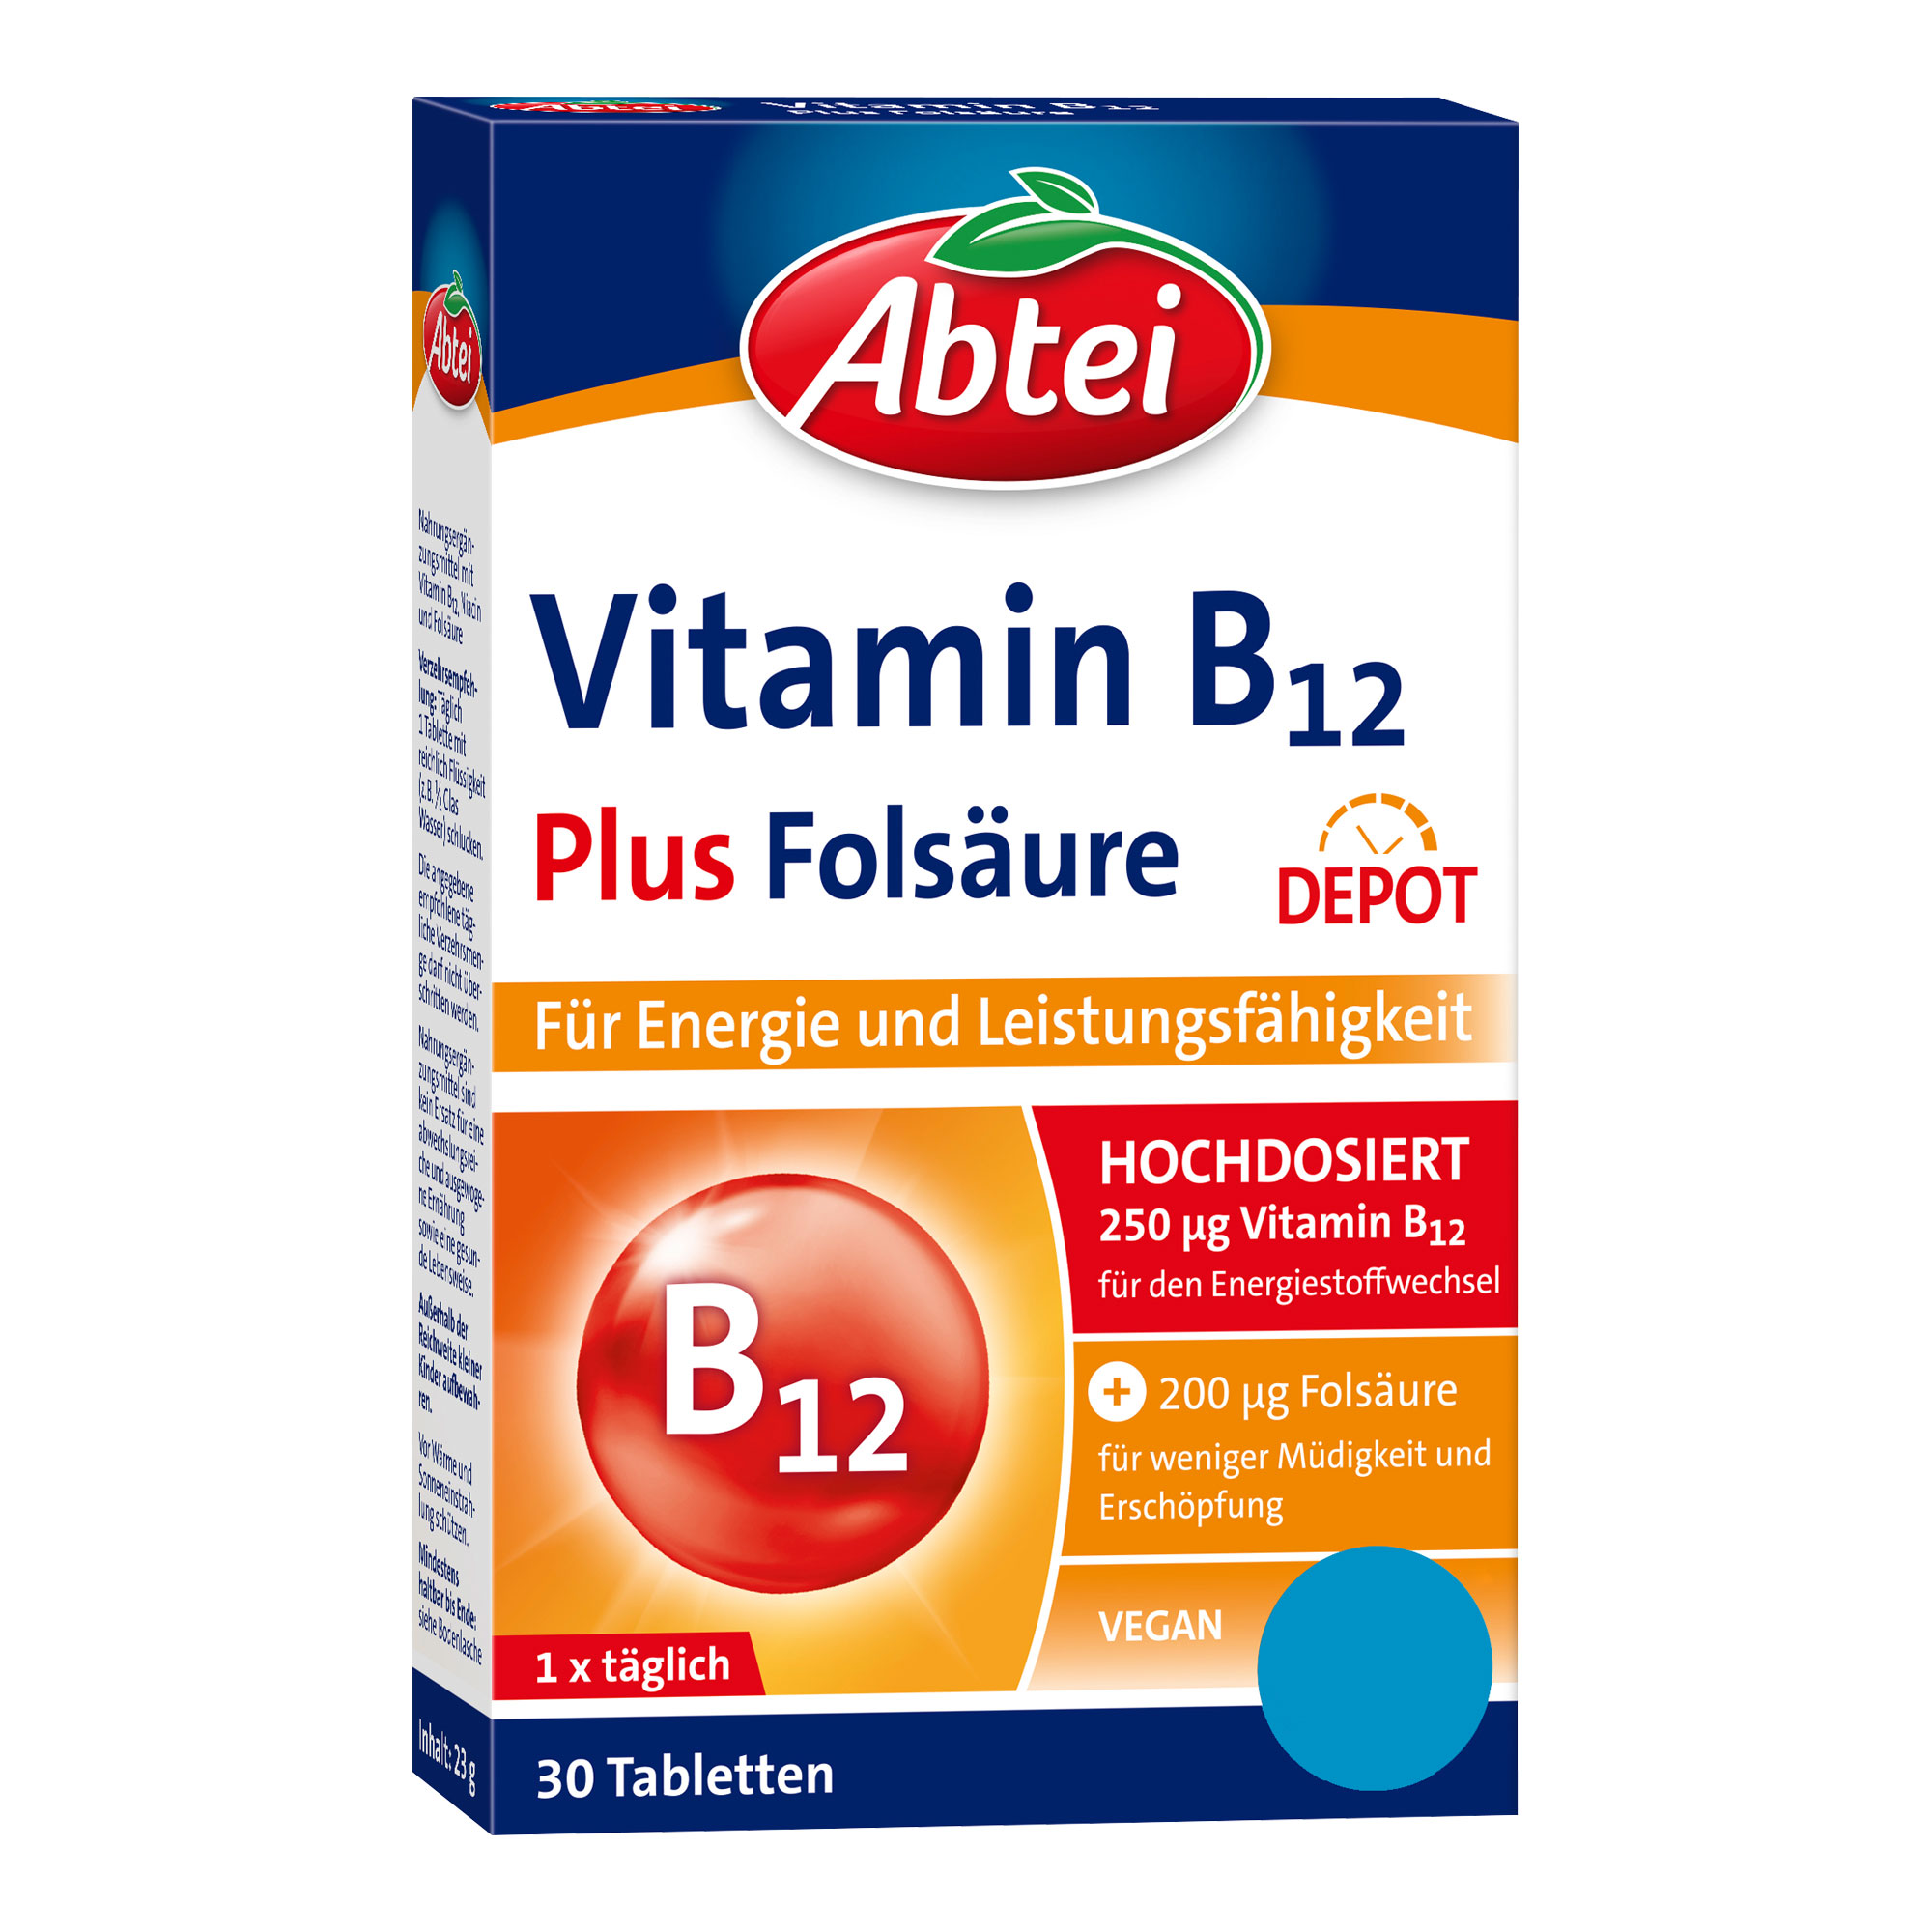 Nahrungsergänzungsmittel mit hochdosiertem Vitamin B12, Niacin und Folsäure. Titandioxidfrei.